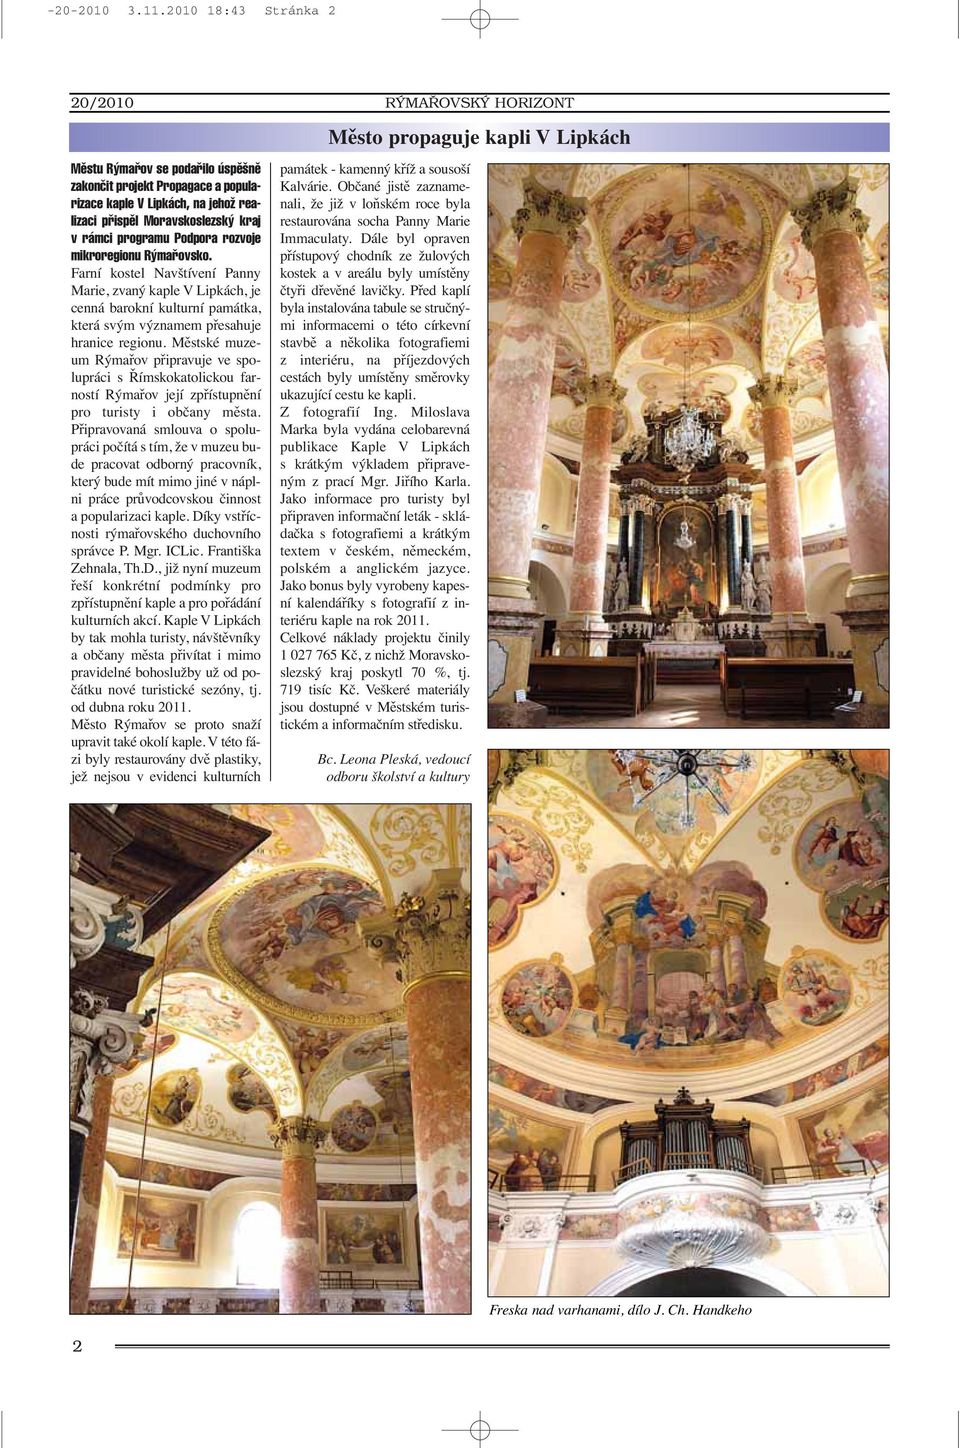 rozvoje mikroregionu R mafiovsko. Farní kostel Navštívení Panny Marie, zvaný kaple V Lipkách, je cenná barokní kulturní památka, která svým významem přesahuje hranice regionu.